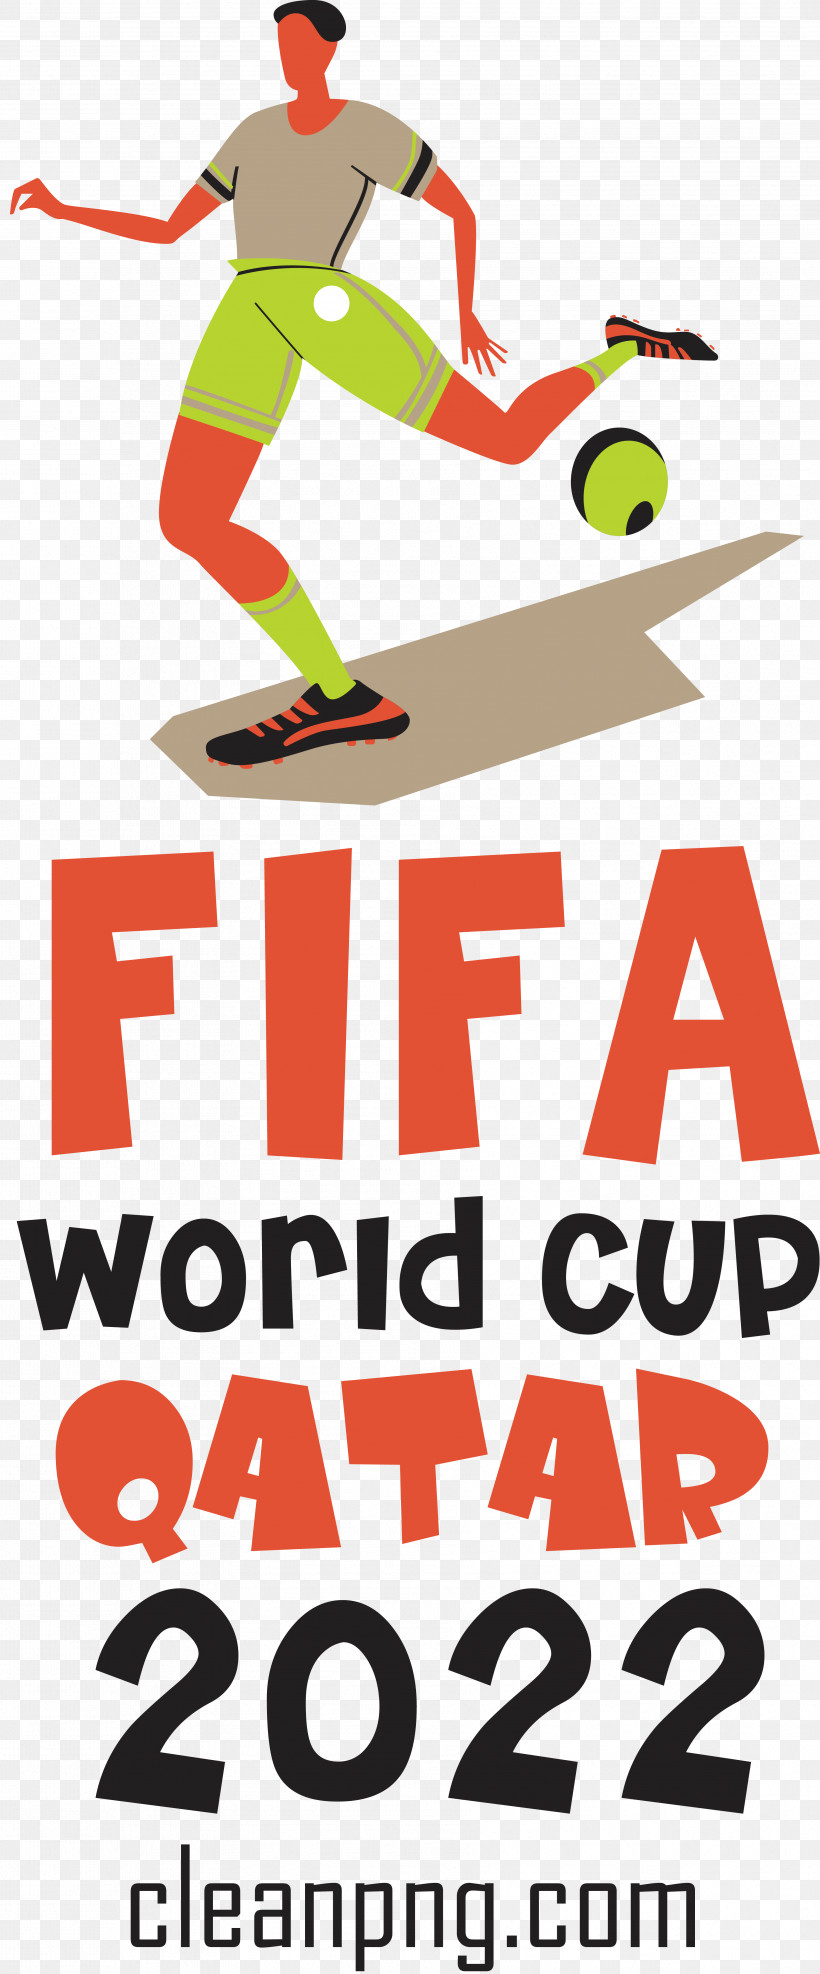 Fifa World Cup Qatar 2022 Fifa World Cup Qatar Football Soccer, PNG, 3562x8579px, Fifa World Cup Qatar 2022, Fifa World Cup, Football, Qatar, Soccer Download Free